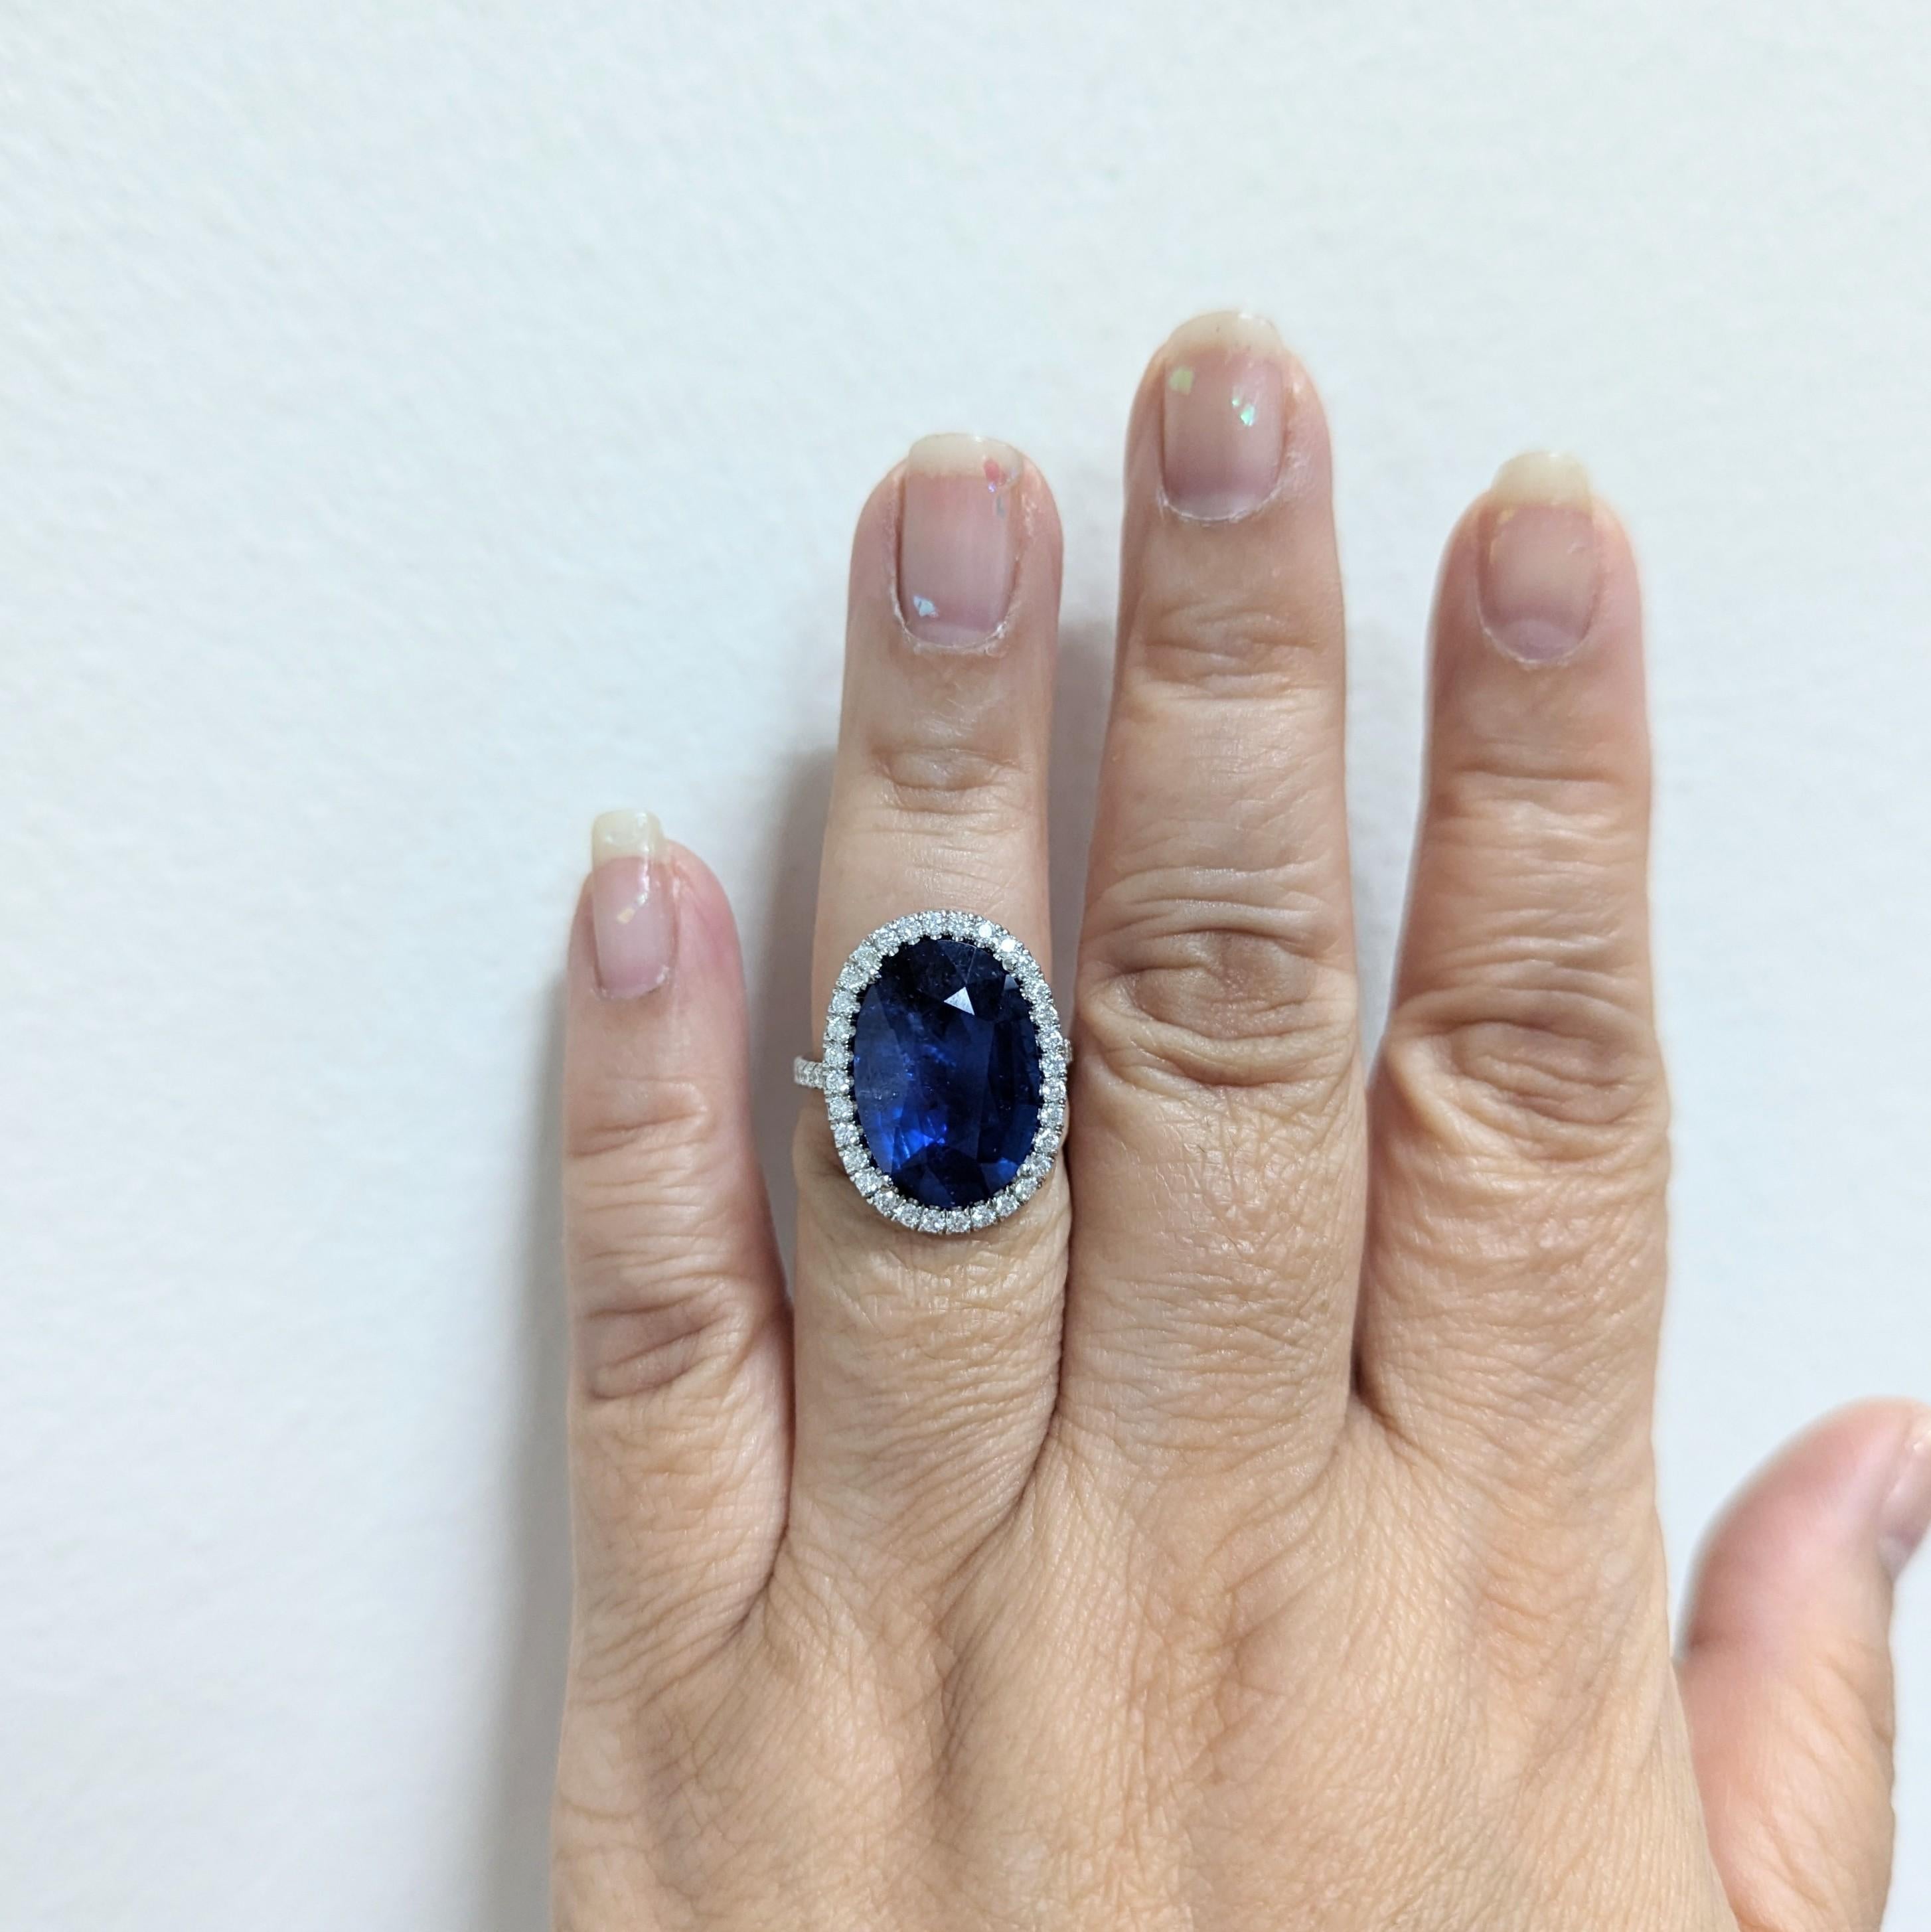 Magnifique 10.88 ct. Saphir bleu du Sri Lanka ovale GIA avec 0,80 ct. de diamants ronds de bonne qualité, blancs et brillants.  Fait à la main en platine.  Bague taille 6.5.  Certificat GIA inclus.